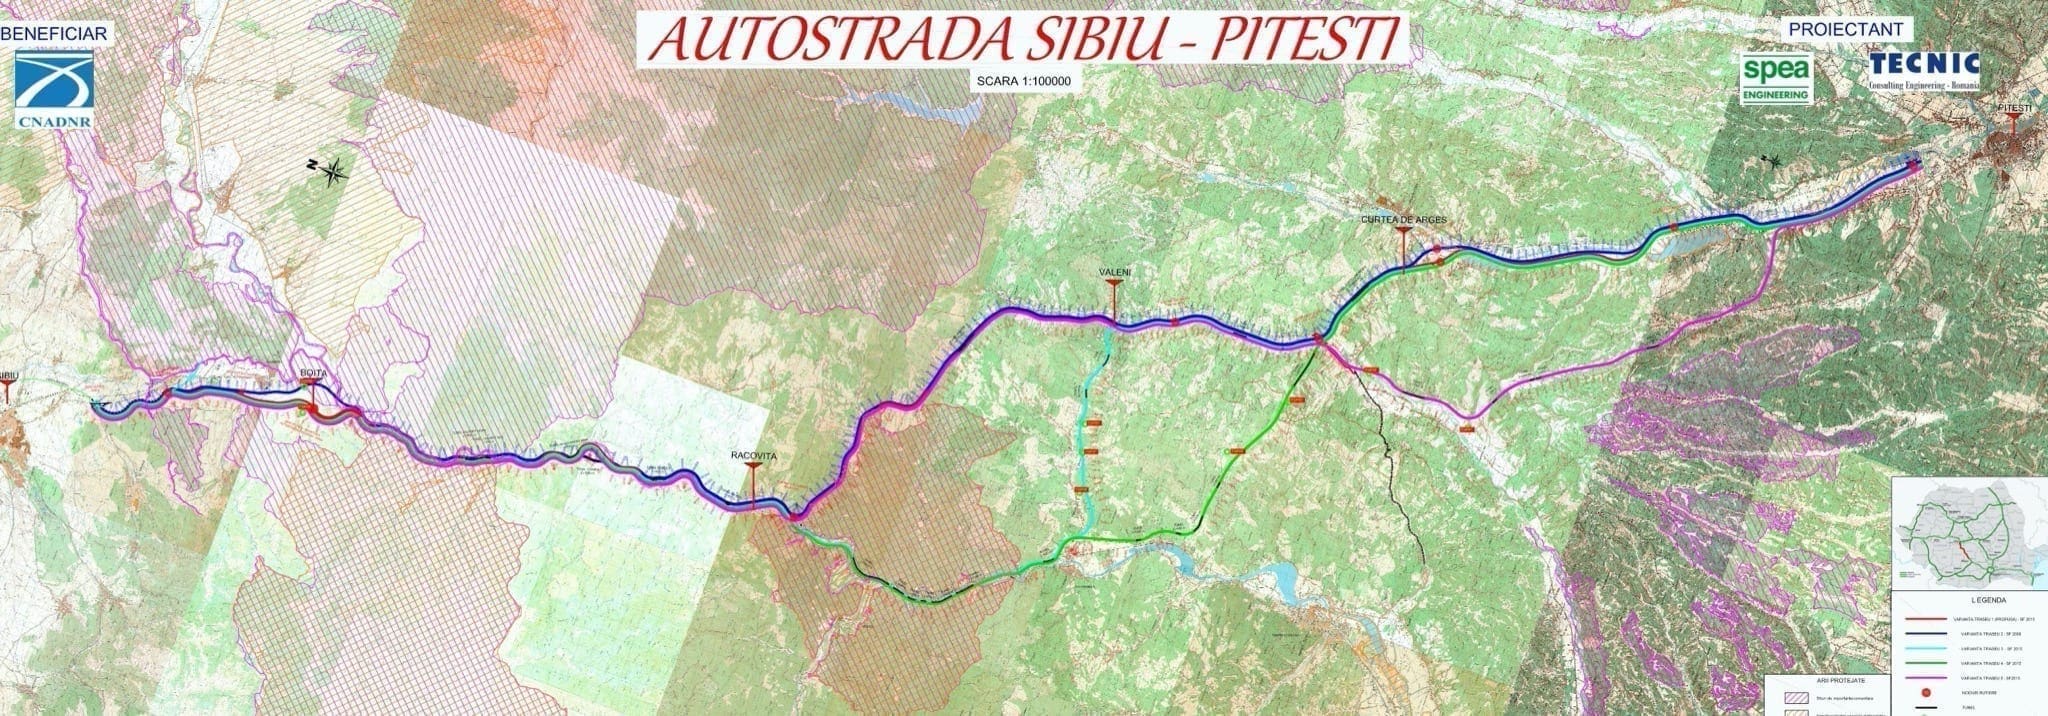 Sibiu Pitesti autostrada - Finanțare UE de 875 de milioane de euro pentru prima fază a autostrăzii Sibiu-Pitești